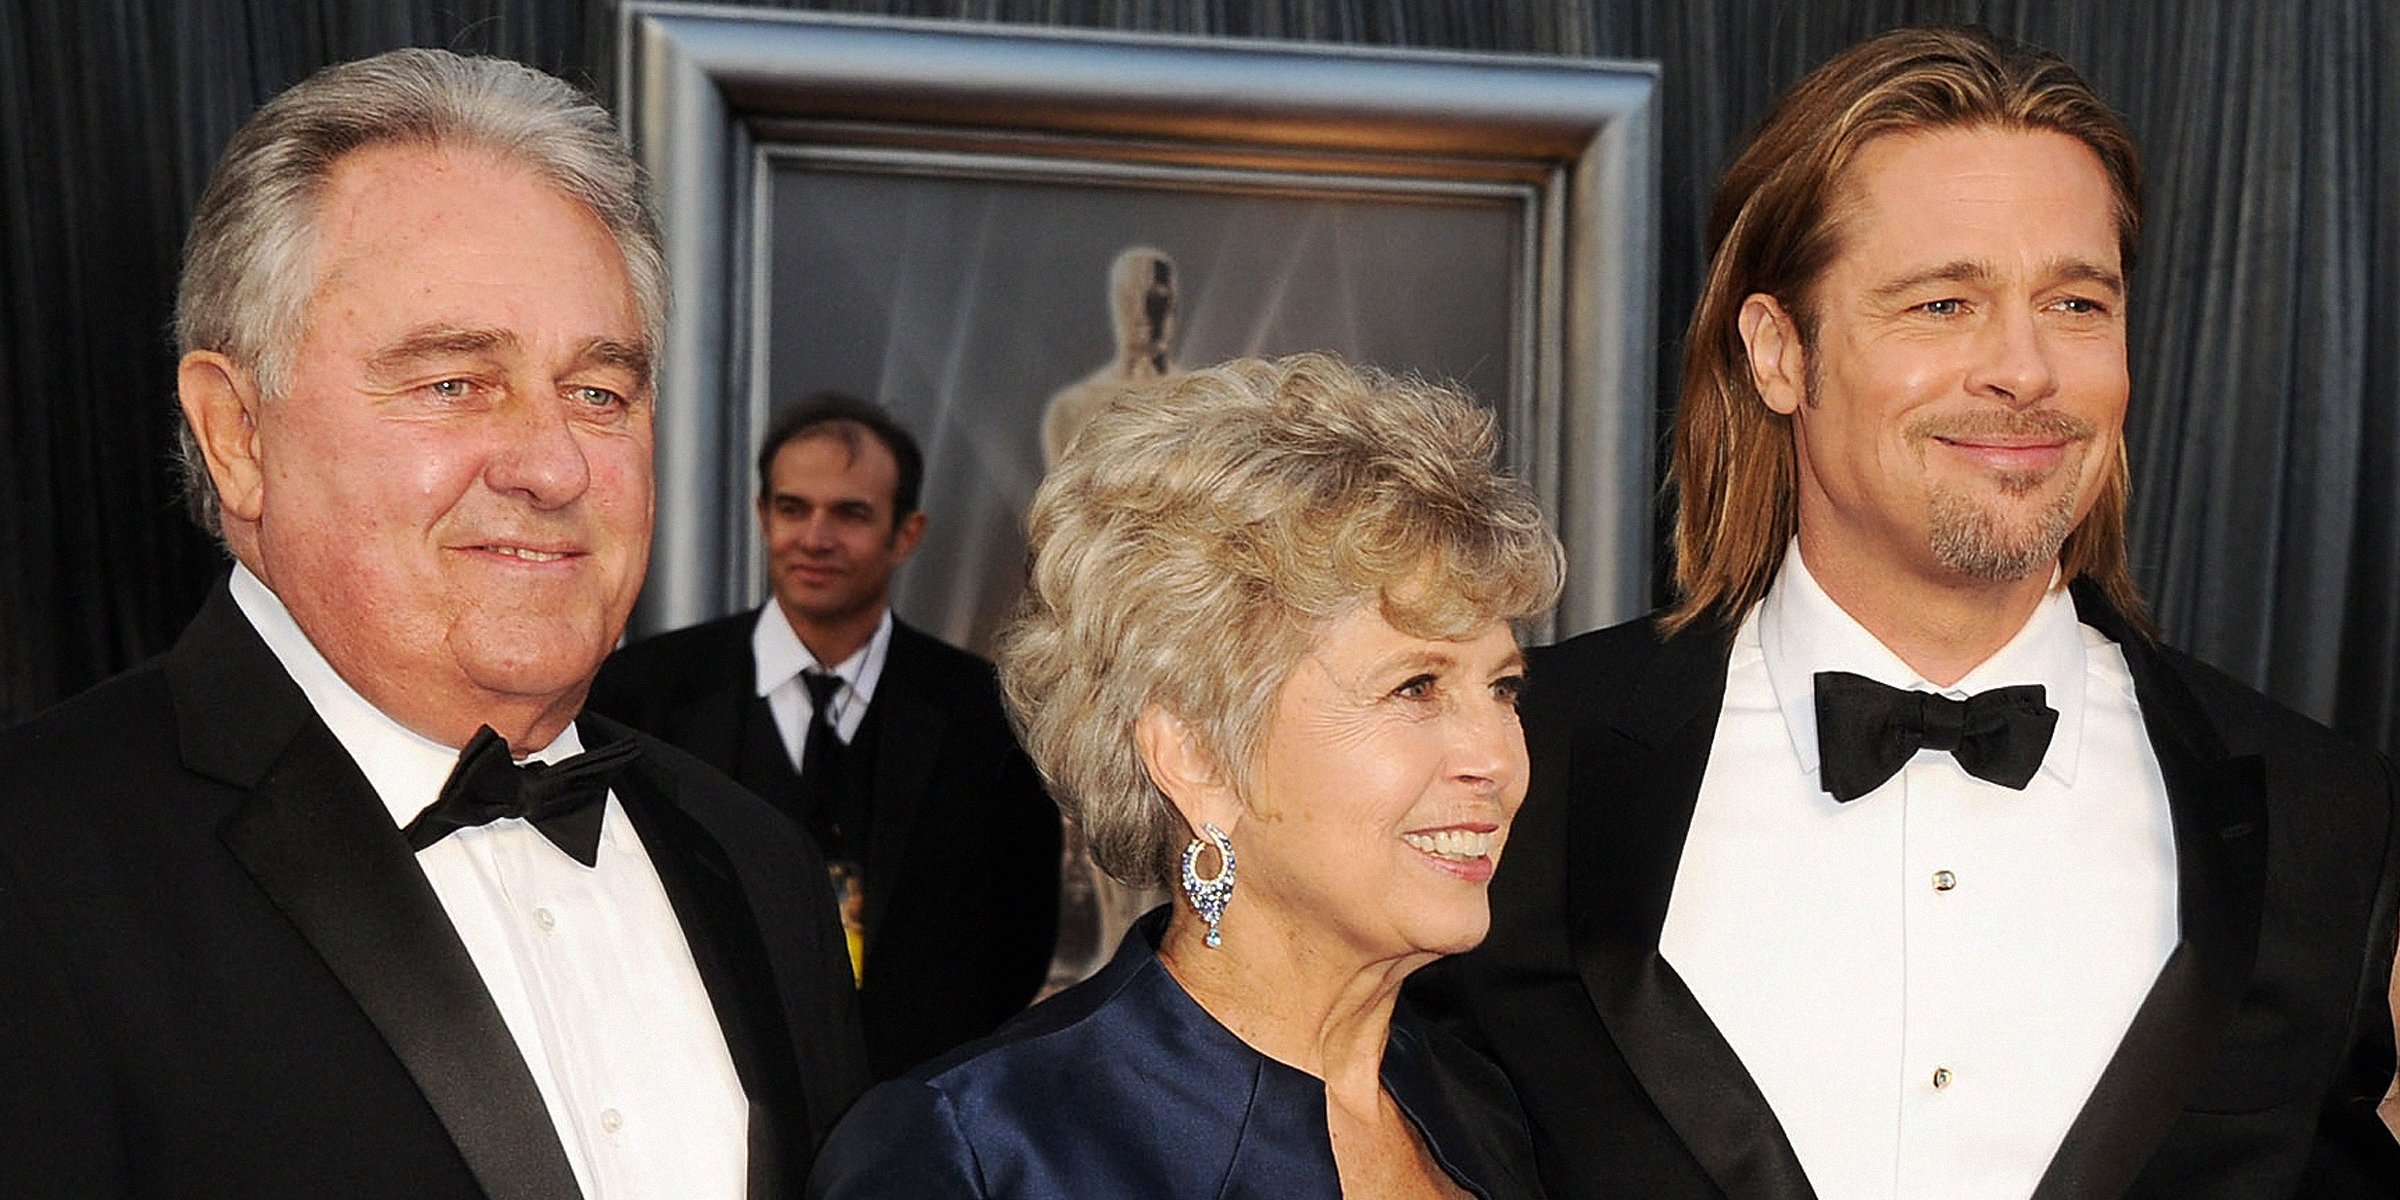 William Pitt, Jane Pitt, and Brad Pitt | Source: Getty Images